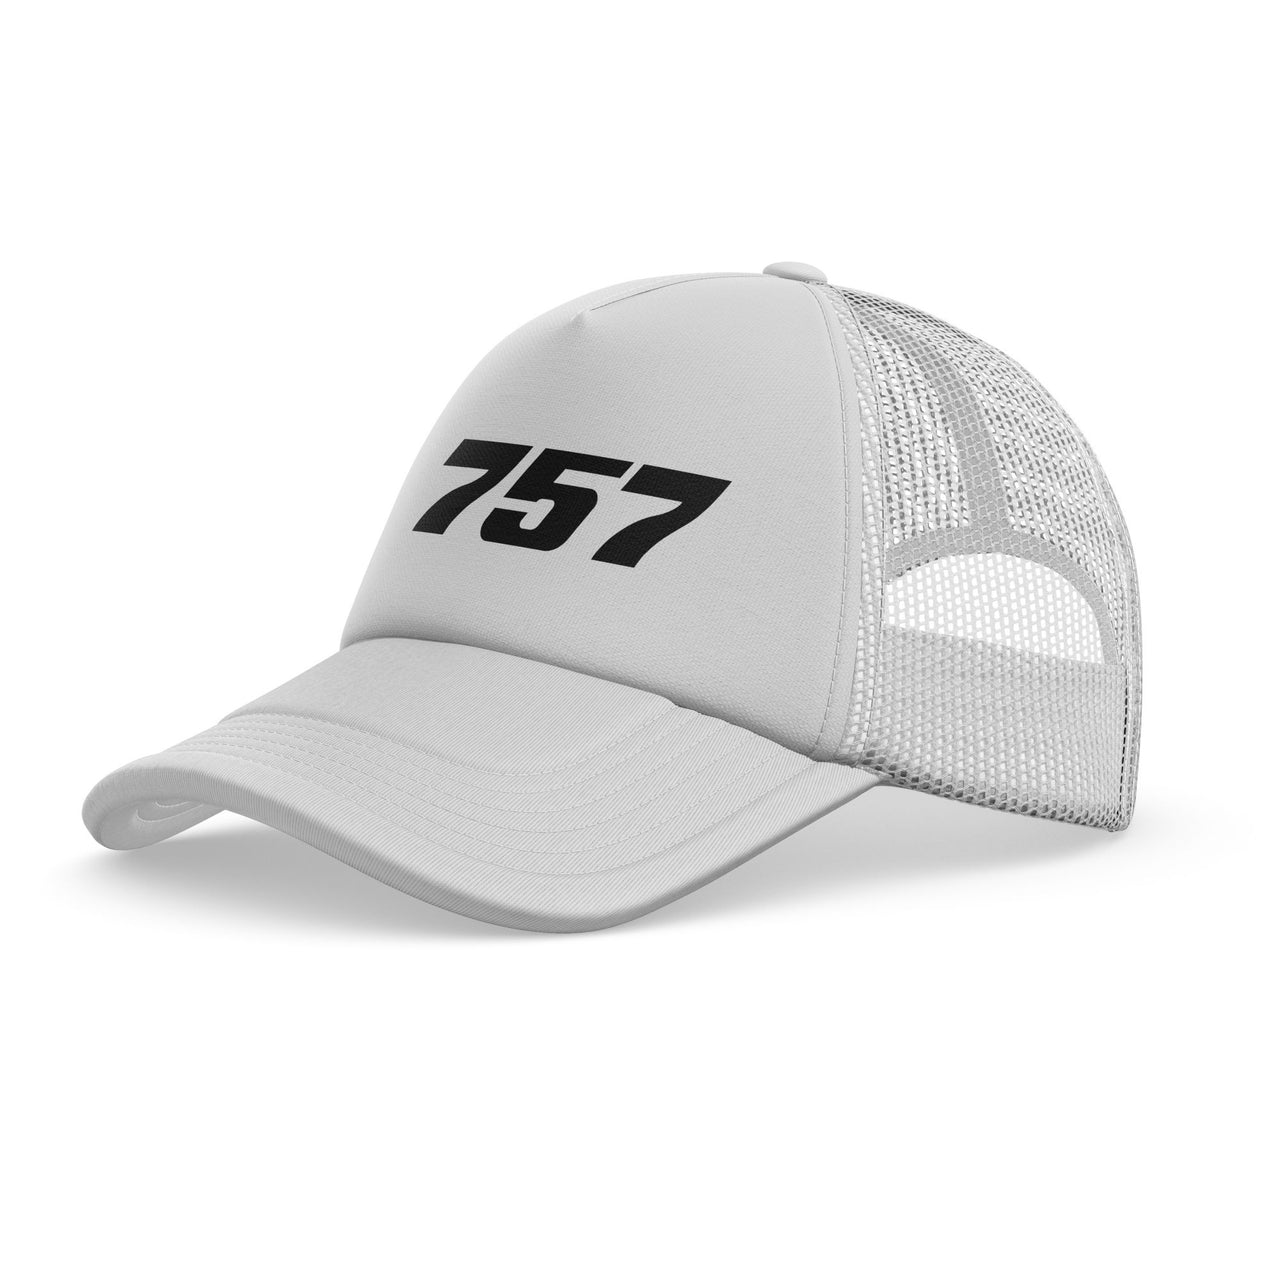 757 Flat Text Designed Trucker Caps & Hats